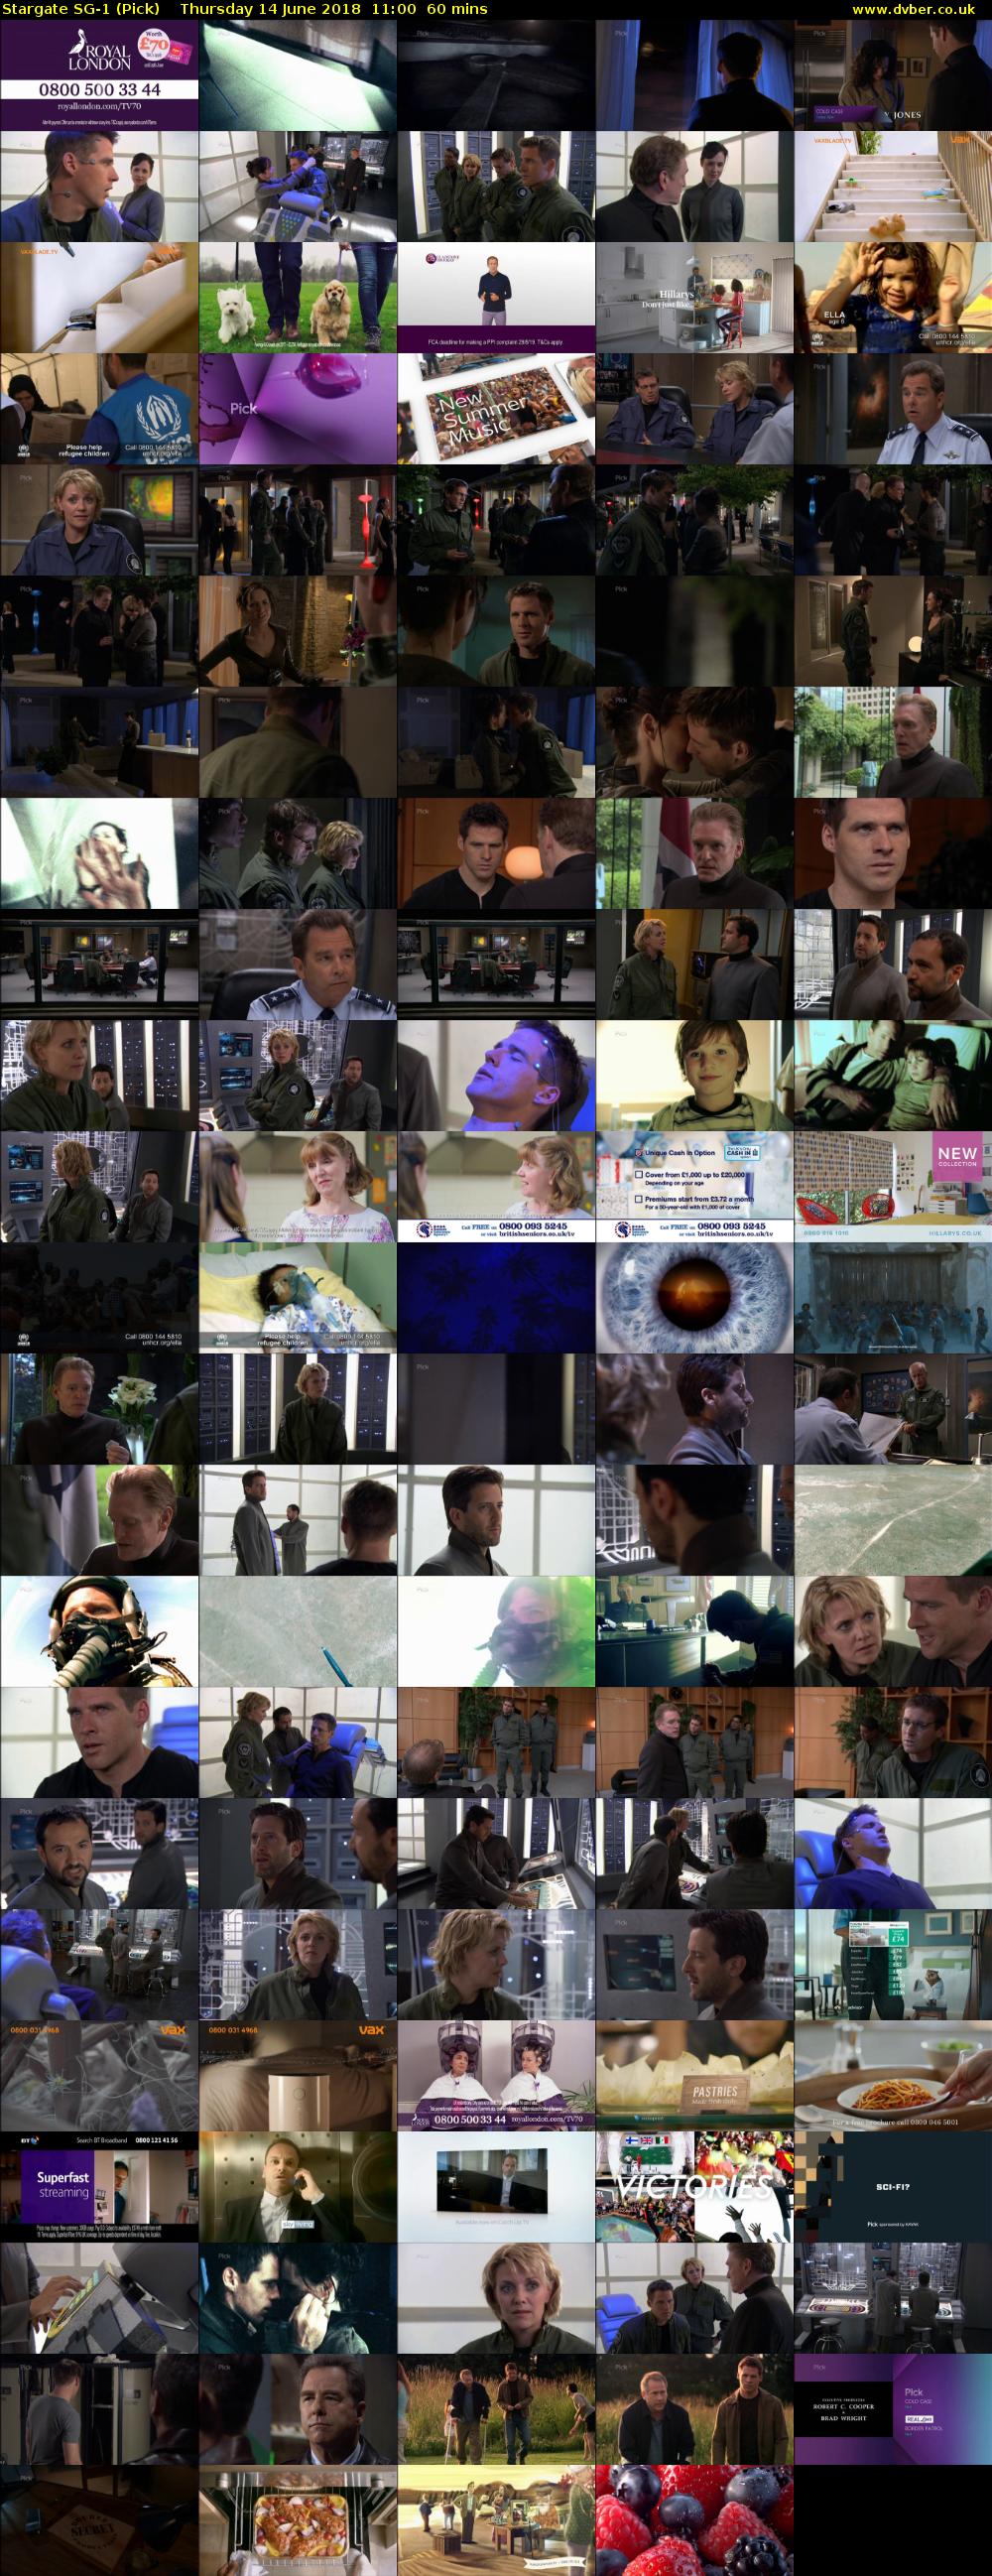 Stargate SG-1 (Pick) Thursday 14 June 2018 11:00 - 12:00